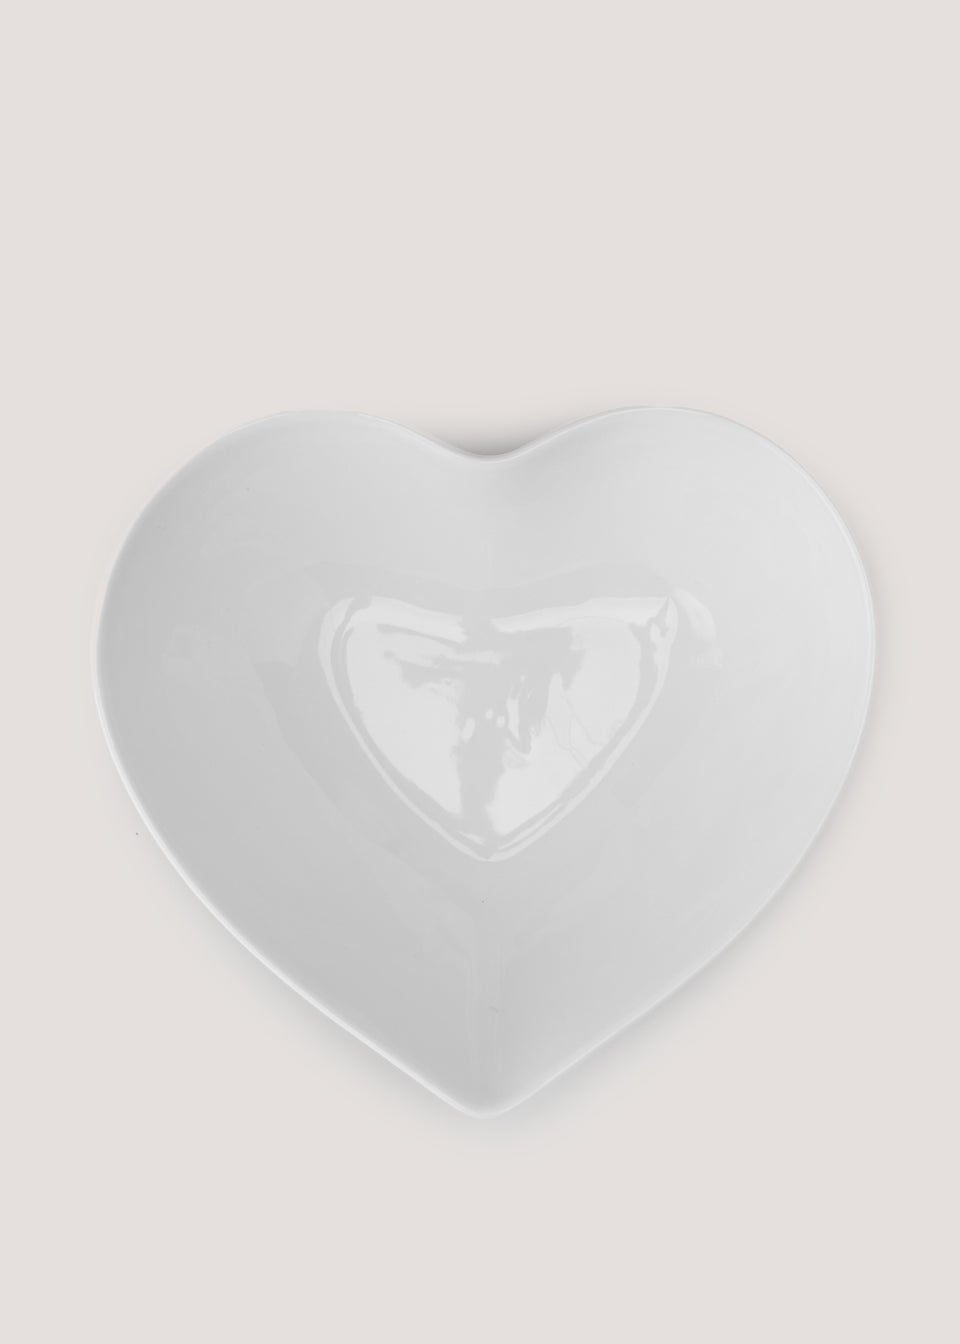 White Heart Shape Serving Dish (22cm x 19cm x 8cm)